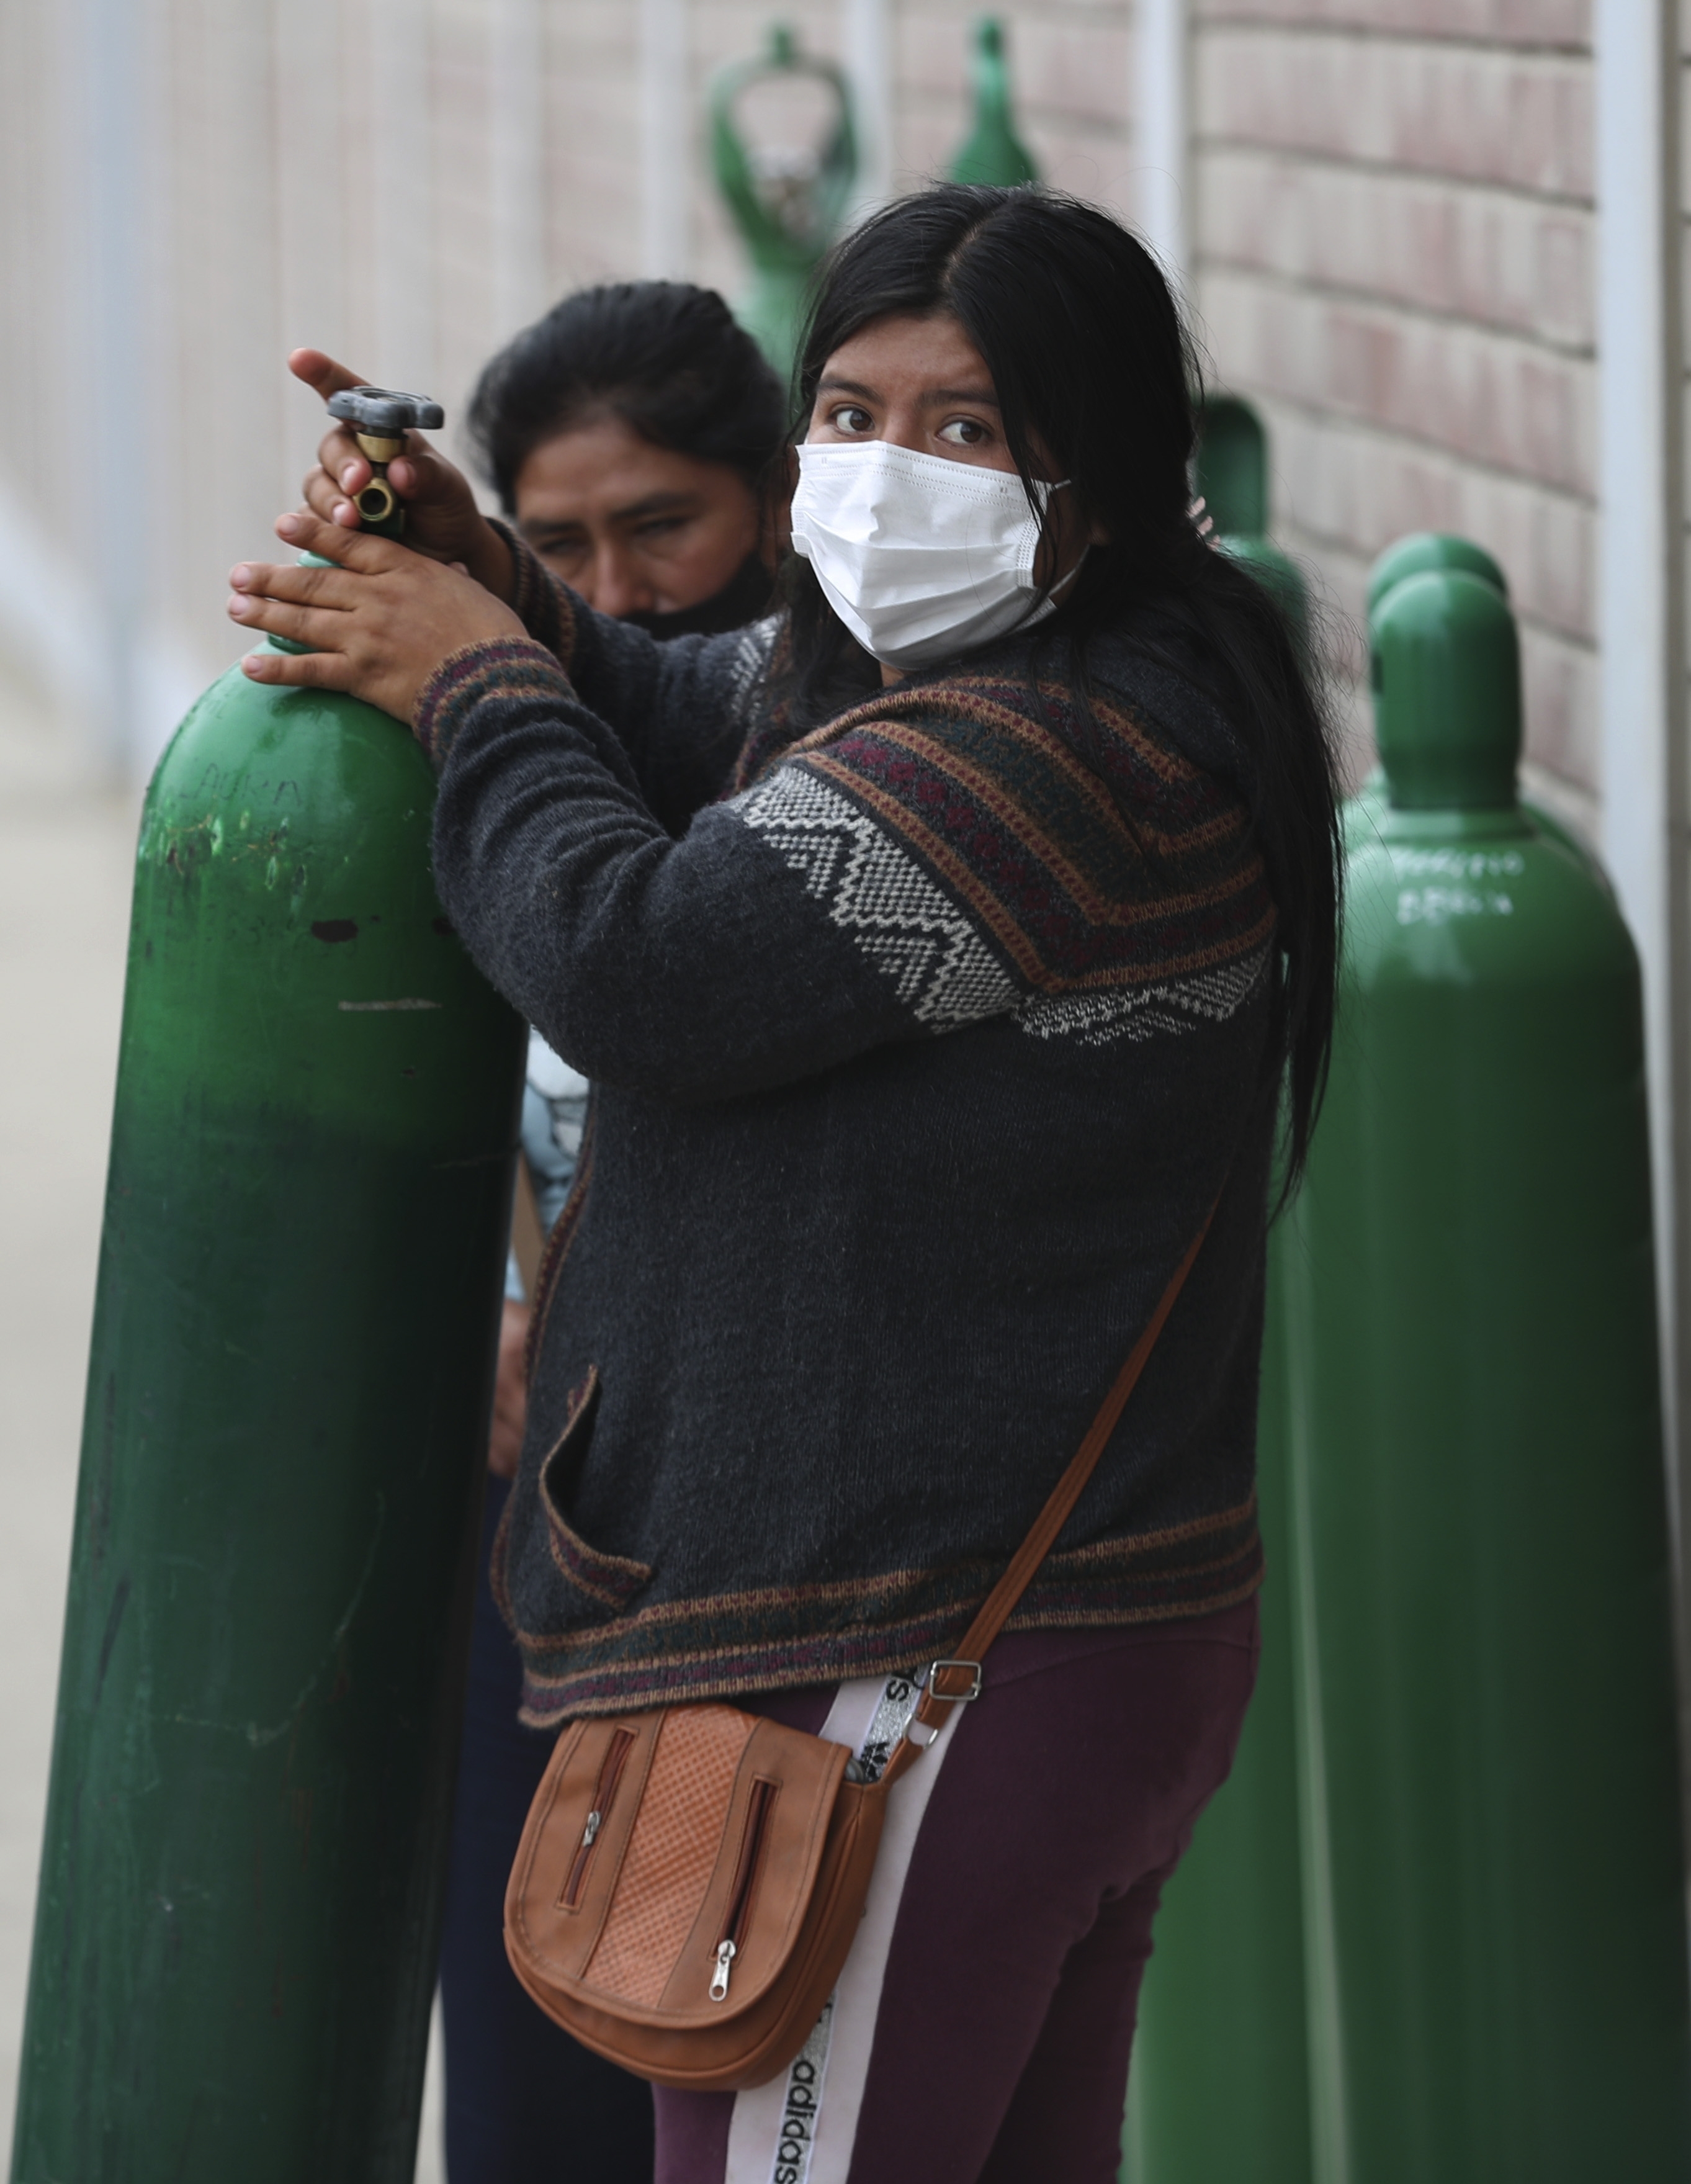 La espera para conseguir una recarga de oxígeno en Lima (AP)